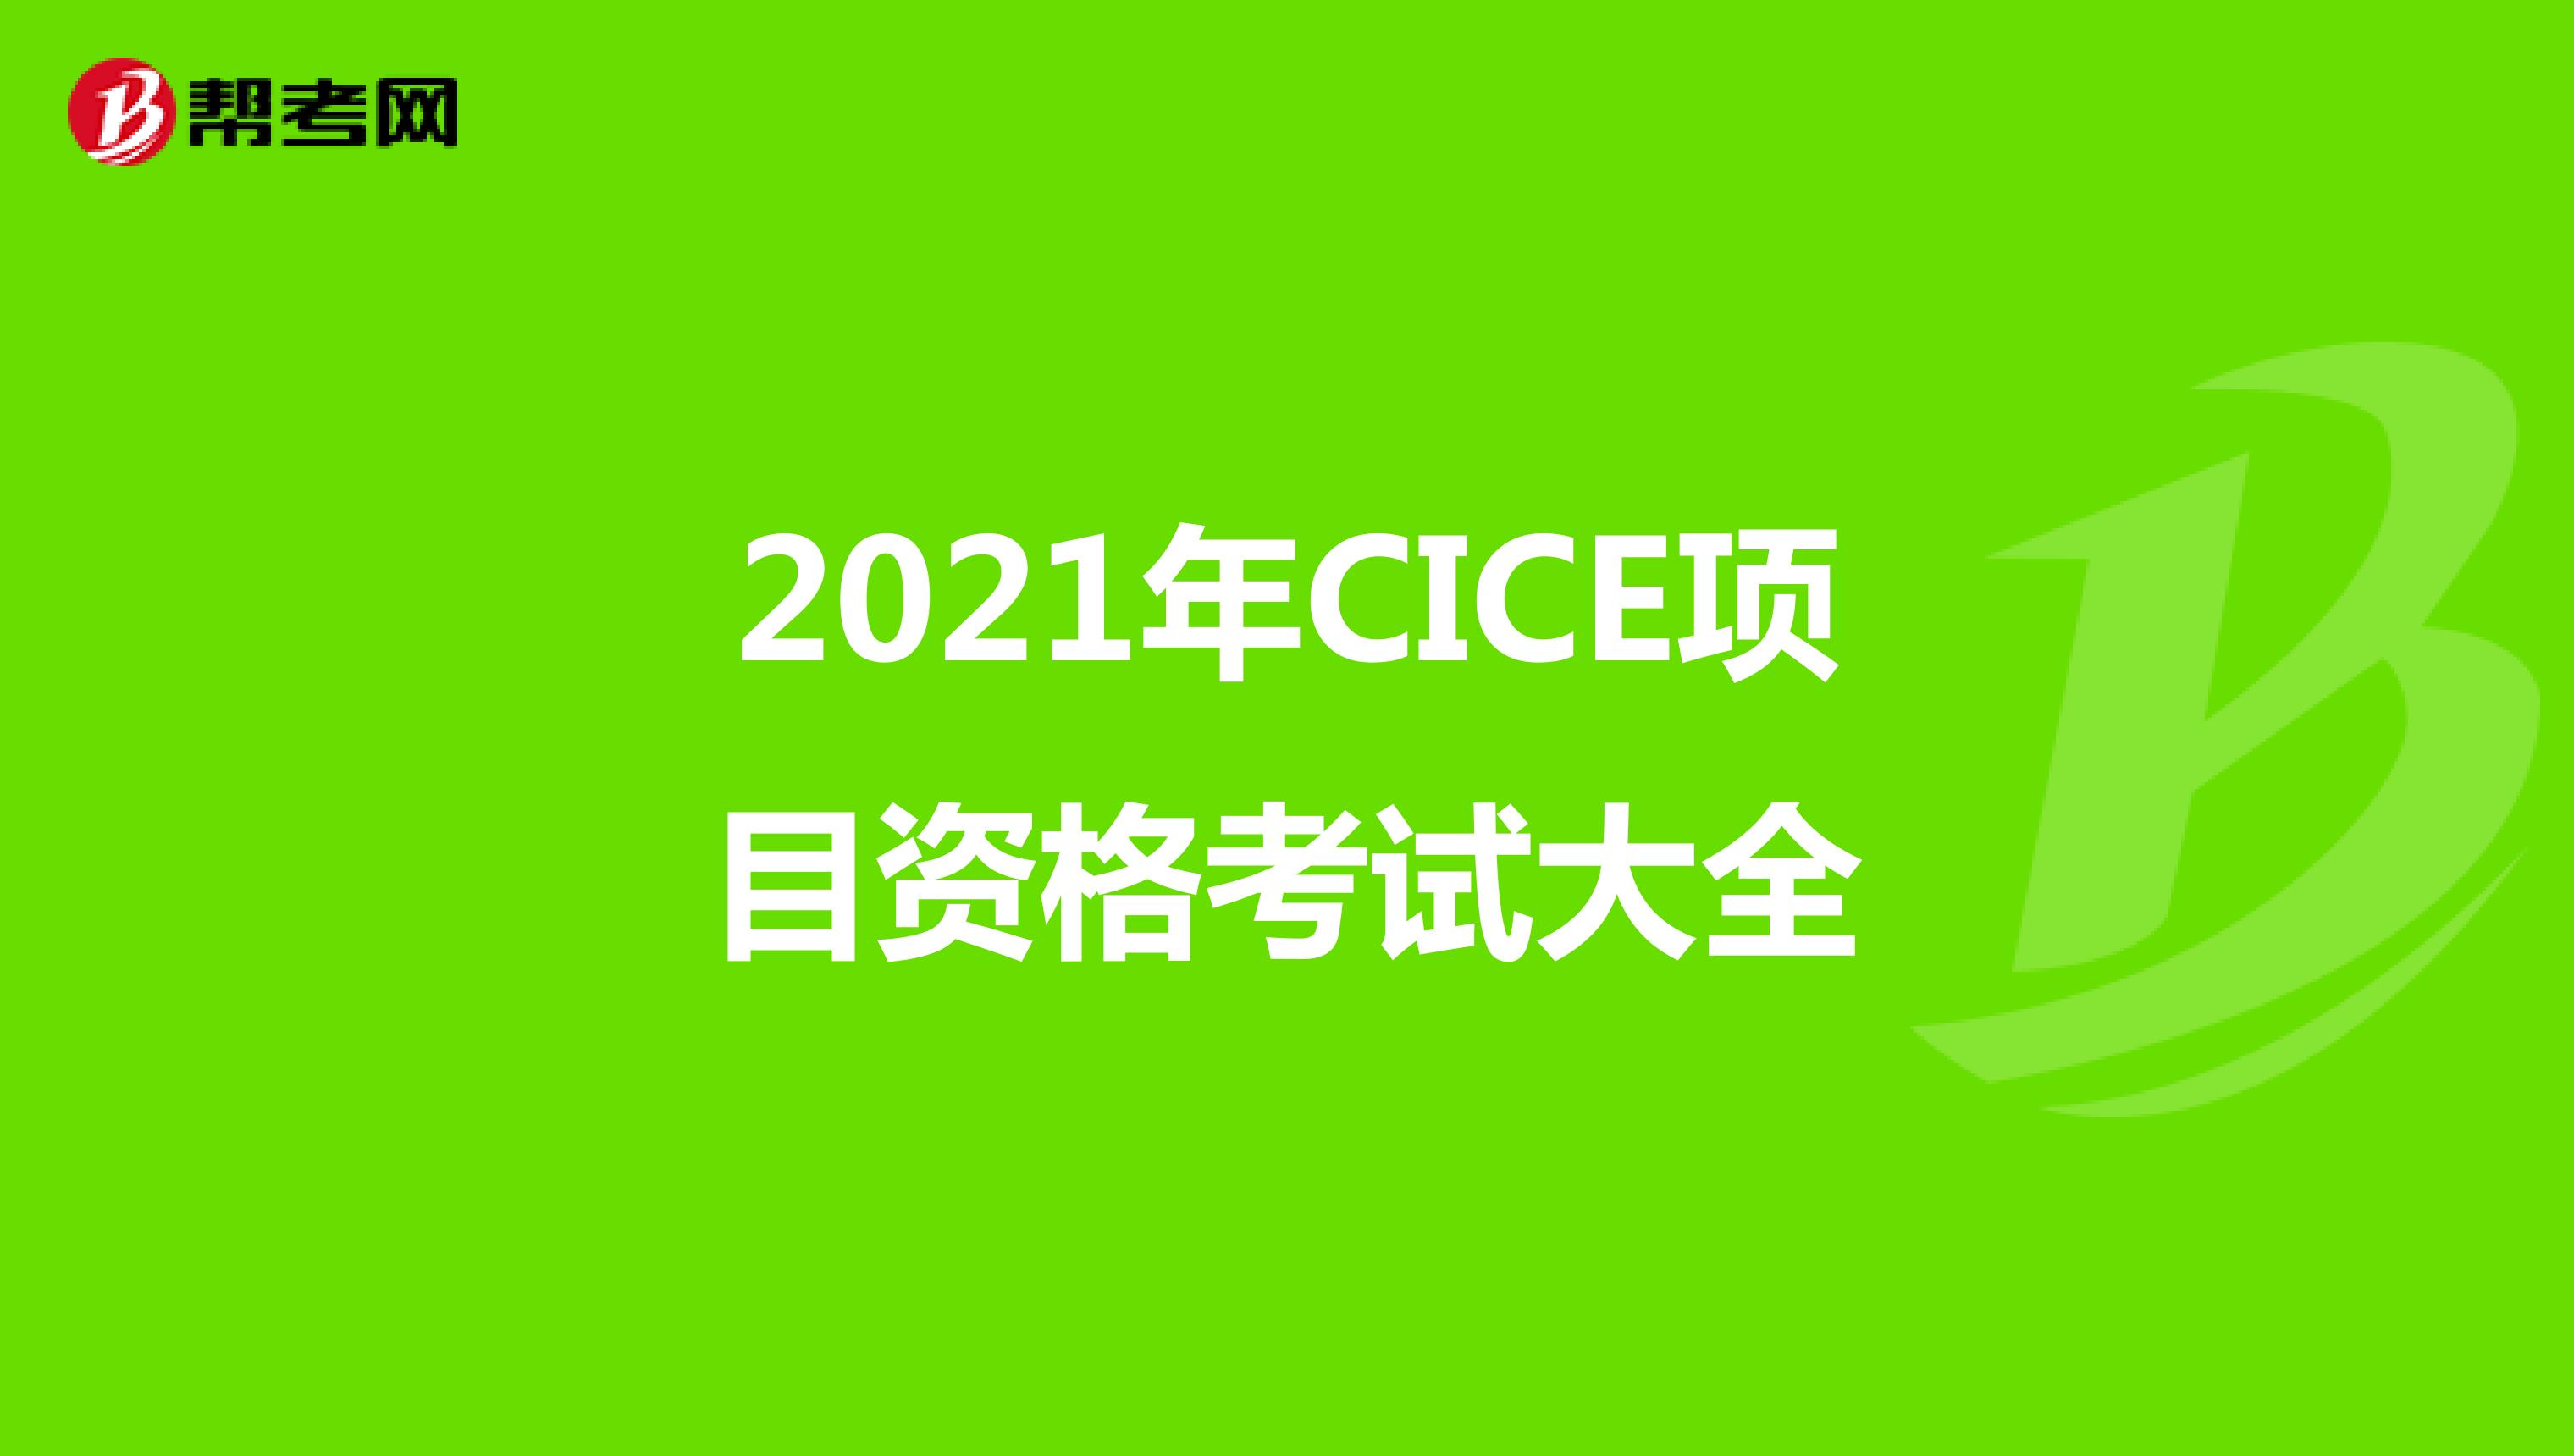 2021年CICE项目资格考试大全